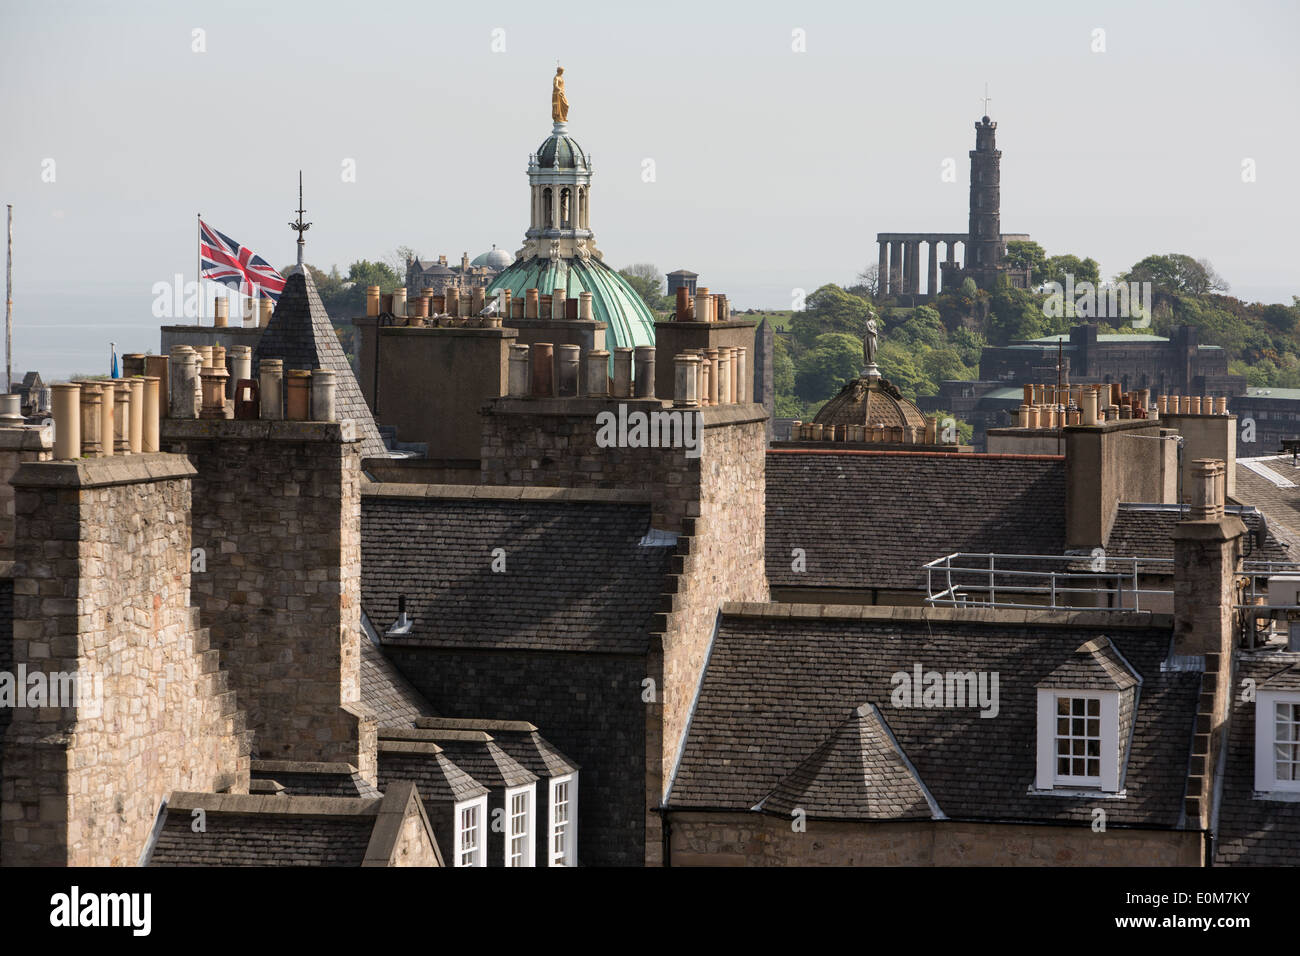 Viste di Edimburgo e lo skyline visto dalla parte superiore della Camera Obscura edificio su High Street (Royal Mile), a Edimburgo, Scozia Foto Stock